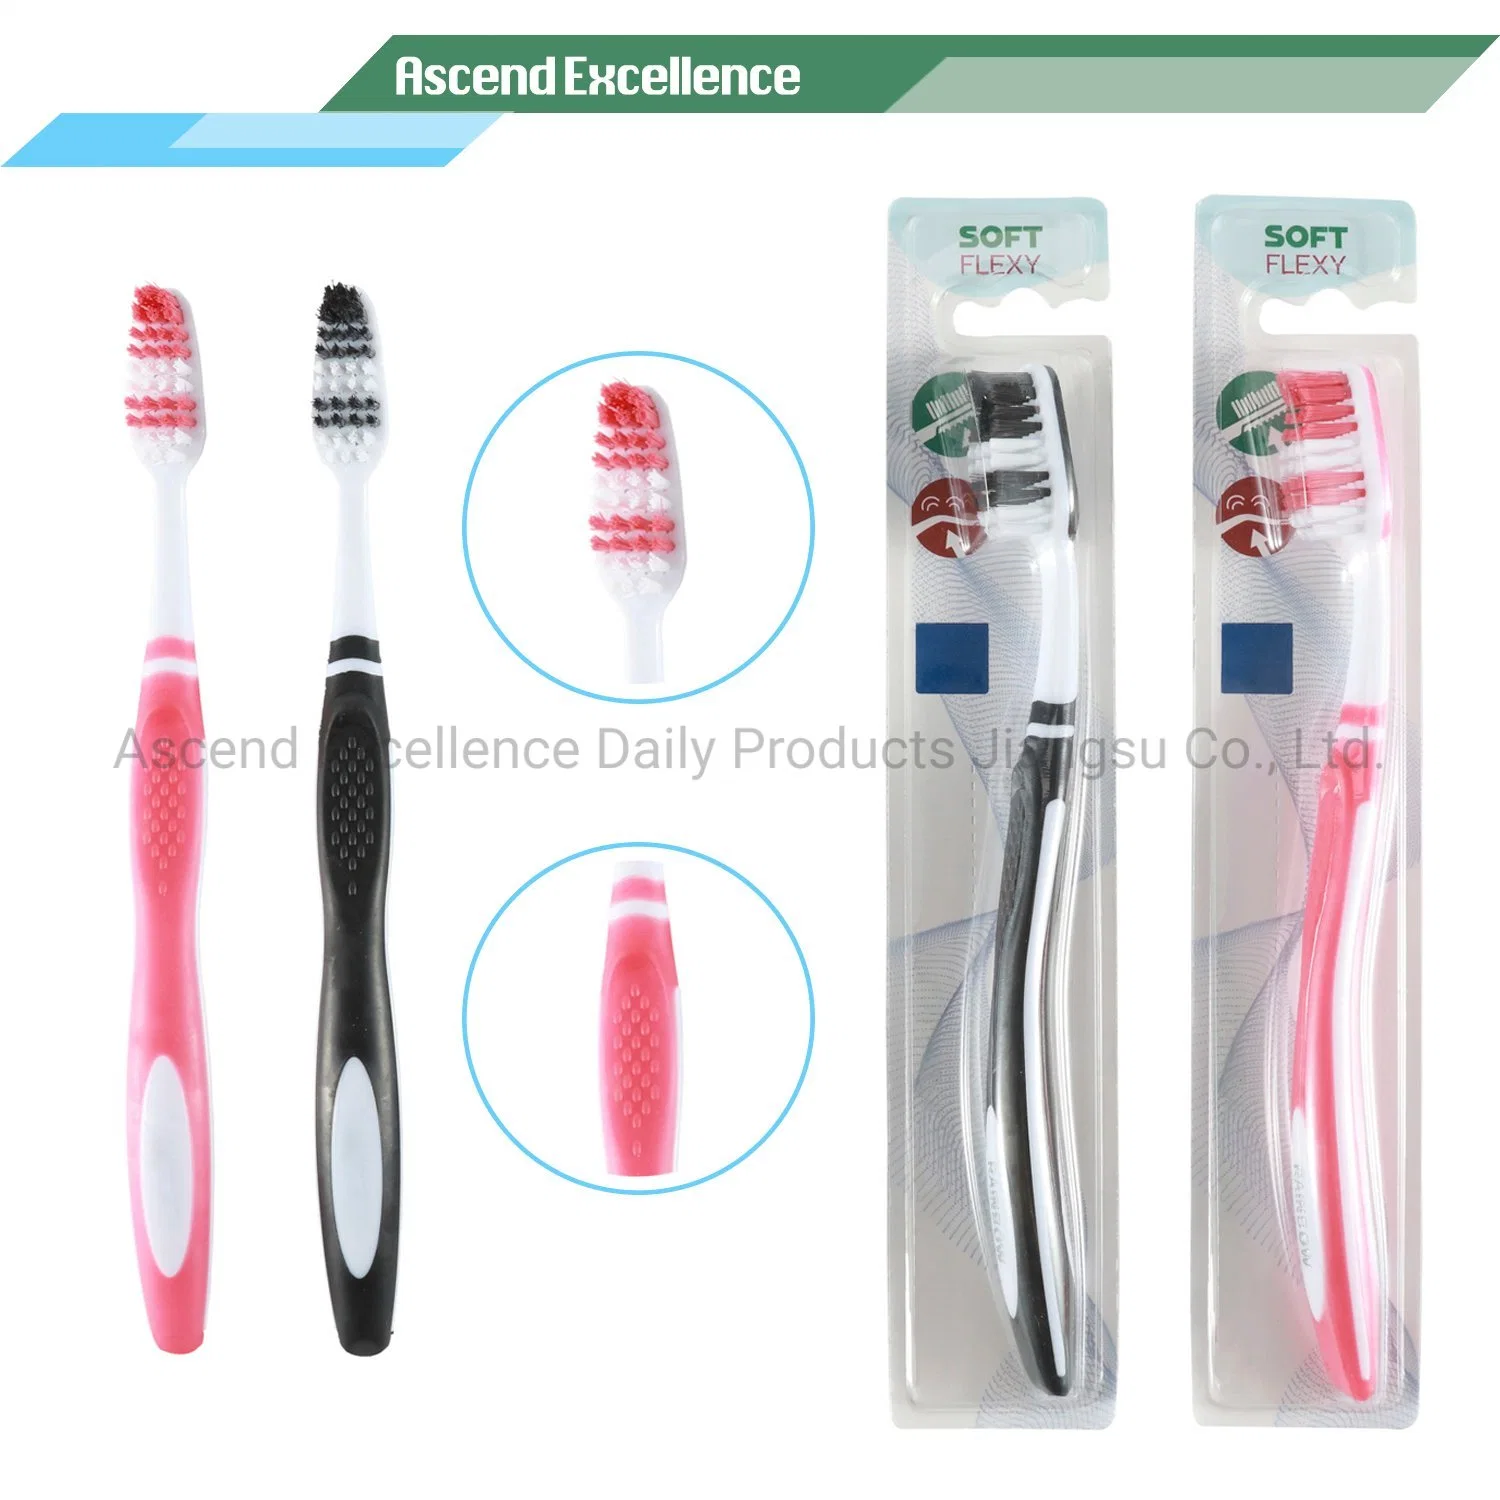 New Style meistverkaufte Zahnbürste mit Premium-Filamenten und Zunge Reiniger